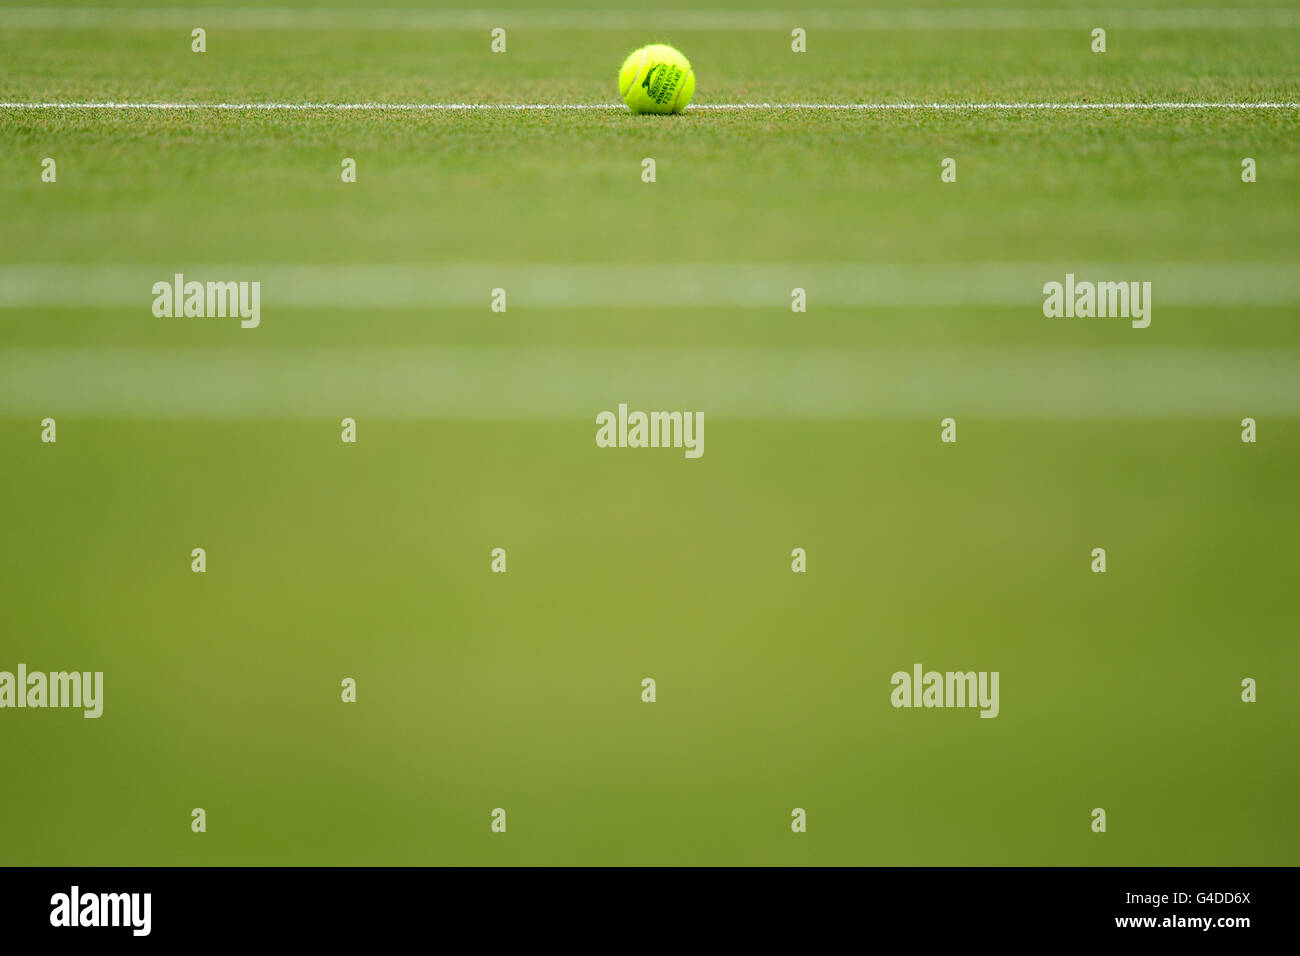 Vue générale d'un ballon de tennis officiel Slazenger Wimbledon sur le court pendant le sixième jour des Championnats de Wimbledon 2011 au All England Lawn tennis and Croquet Club, Wimbledon. Banque D'Images